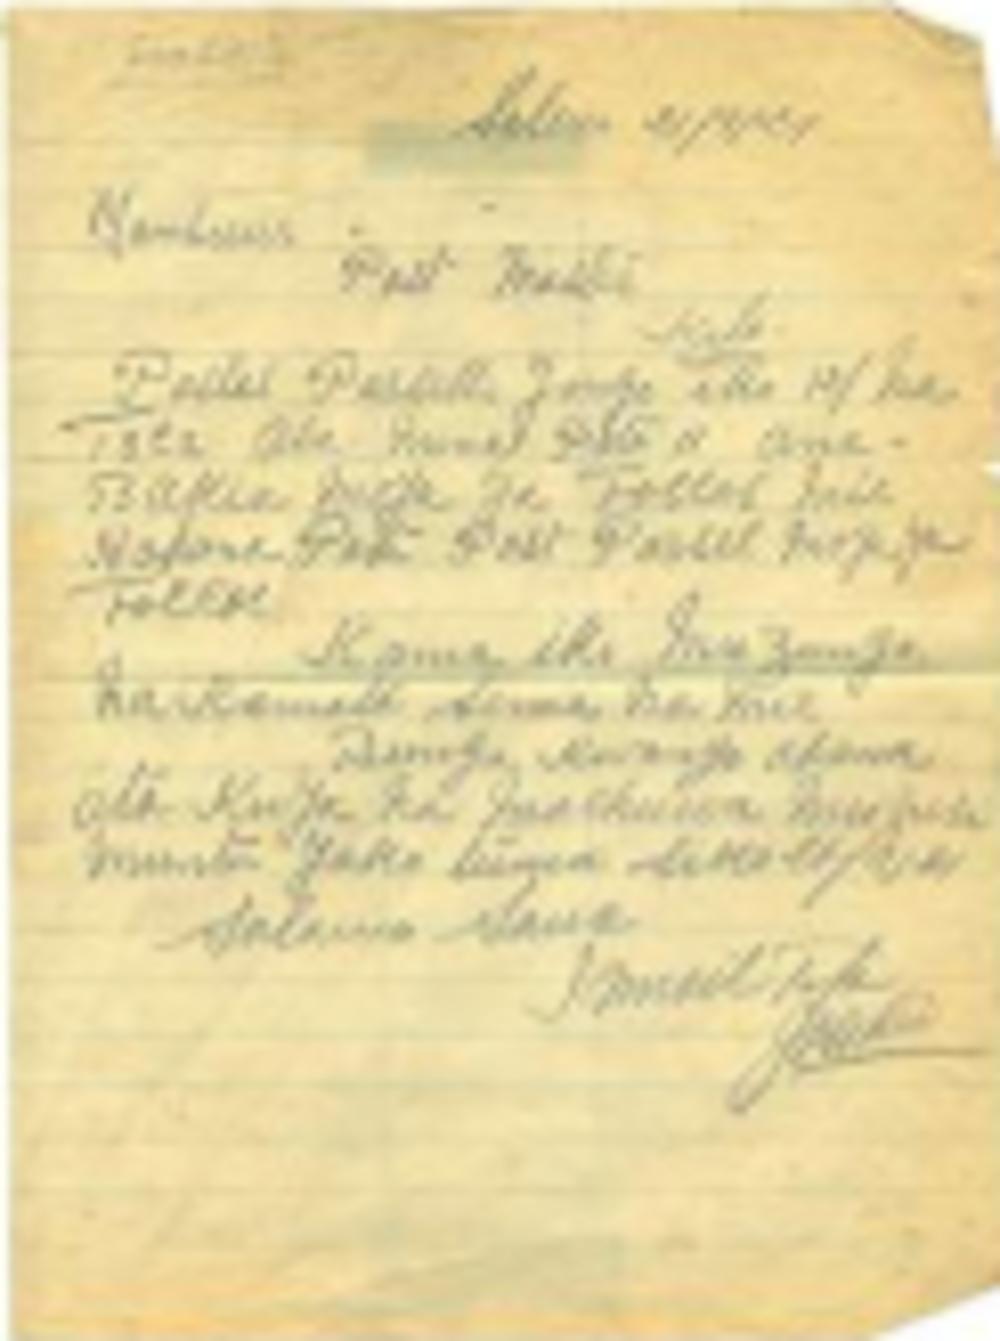 Het Lingala en het Swahili waren vaak de talen waarin de communicatie tussen Congolezen en Belgen verliep. Hier schrijft een Congolese bediende postmeesteres Maria Faes een briefje in het Swahili naar aanleiding van een verloren postpakketje.